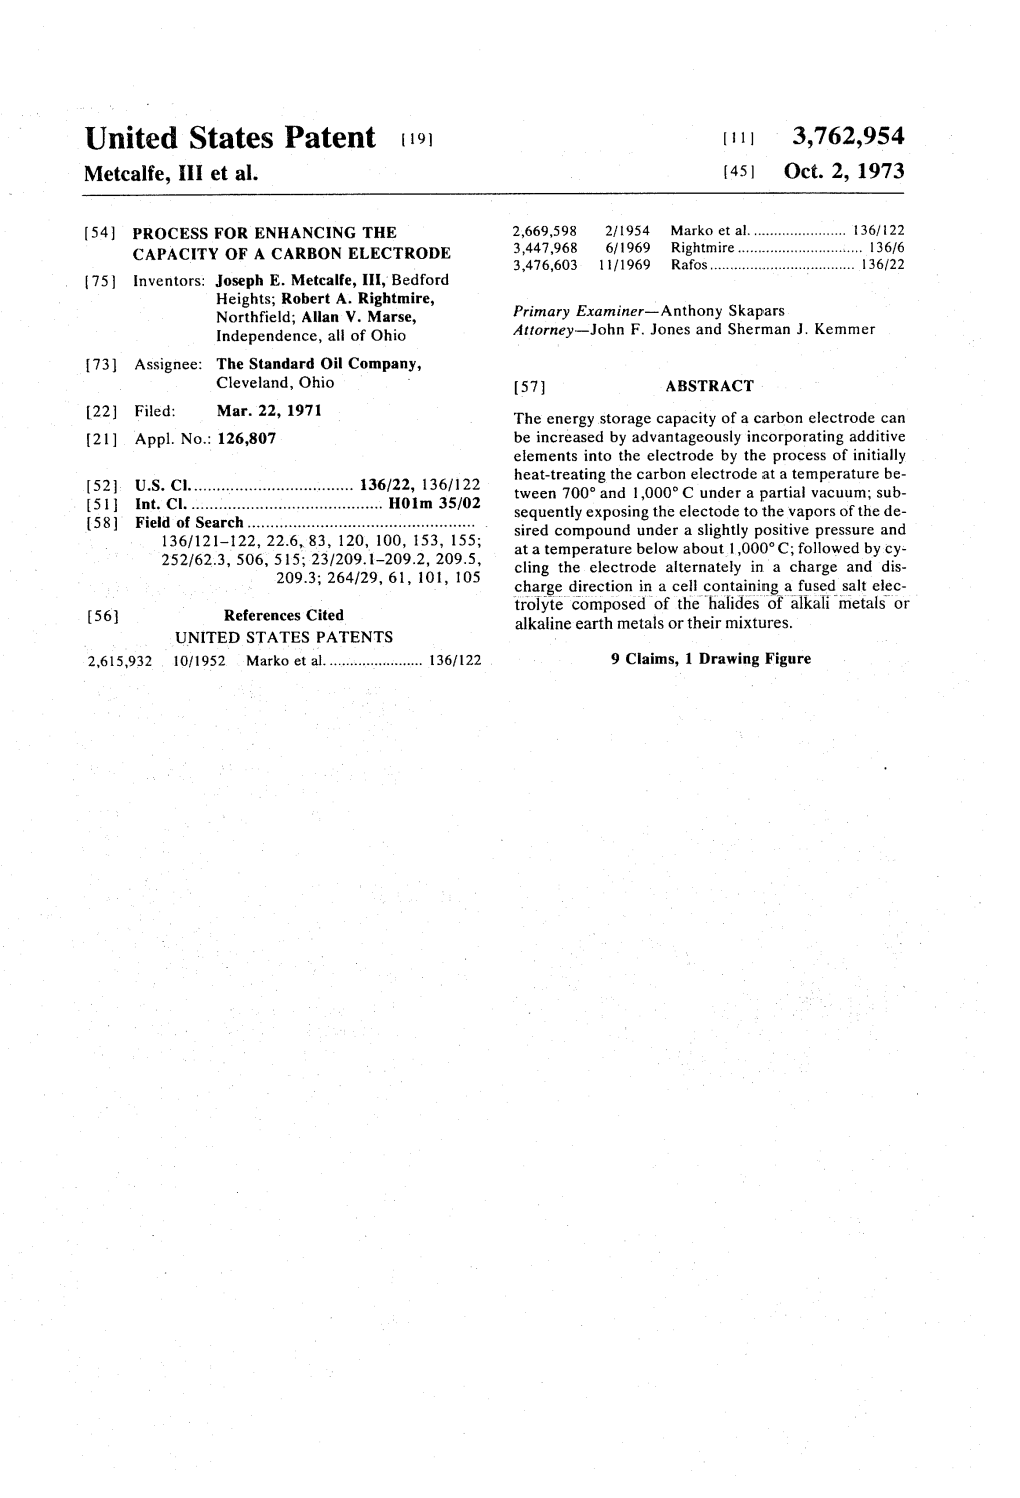 United States Patent 19 11, 3,762,954 Metcalfe, III Et Al